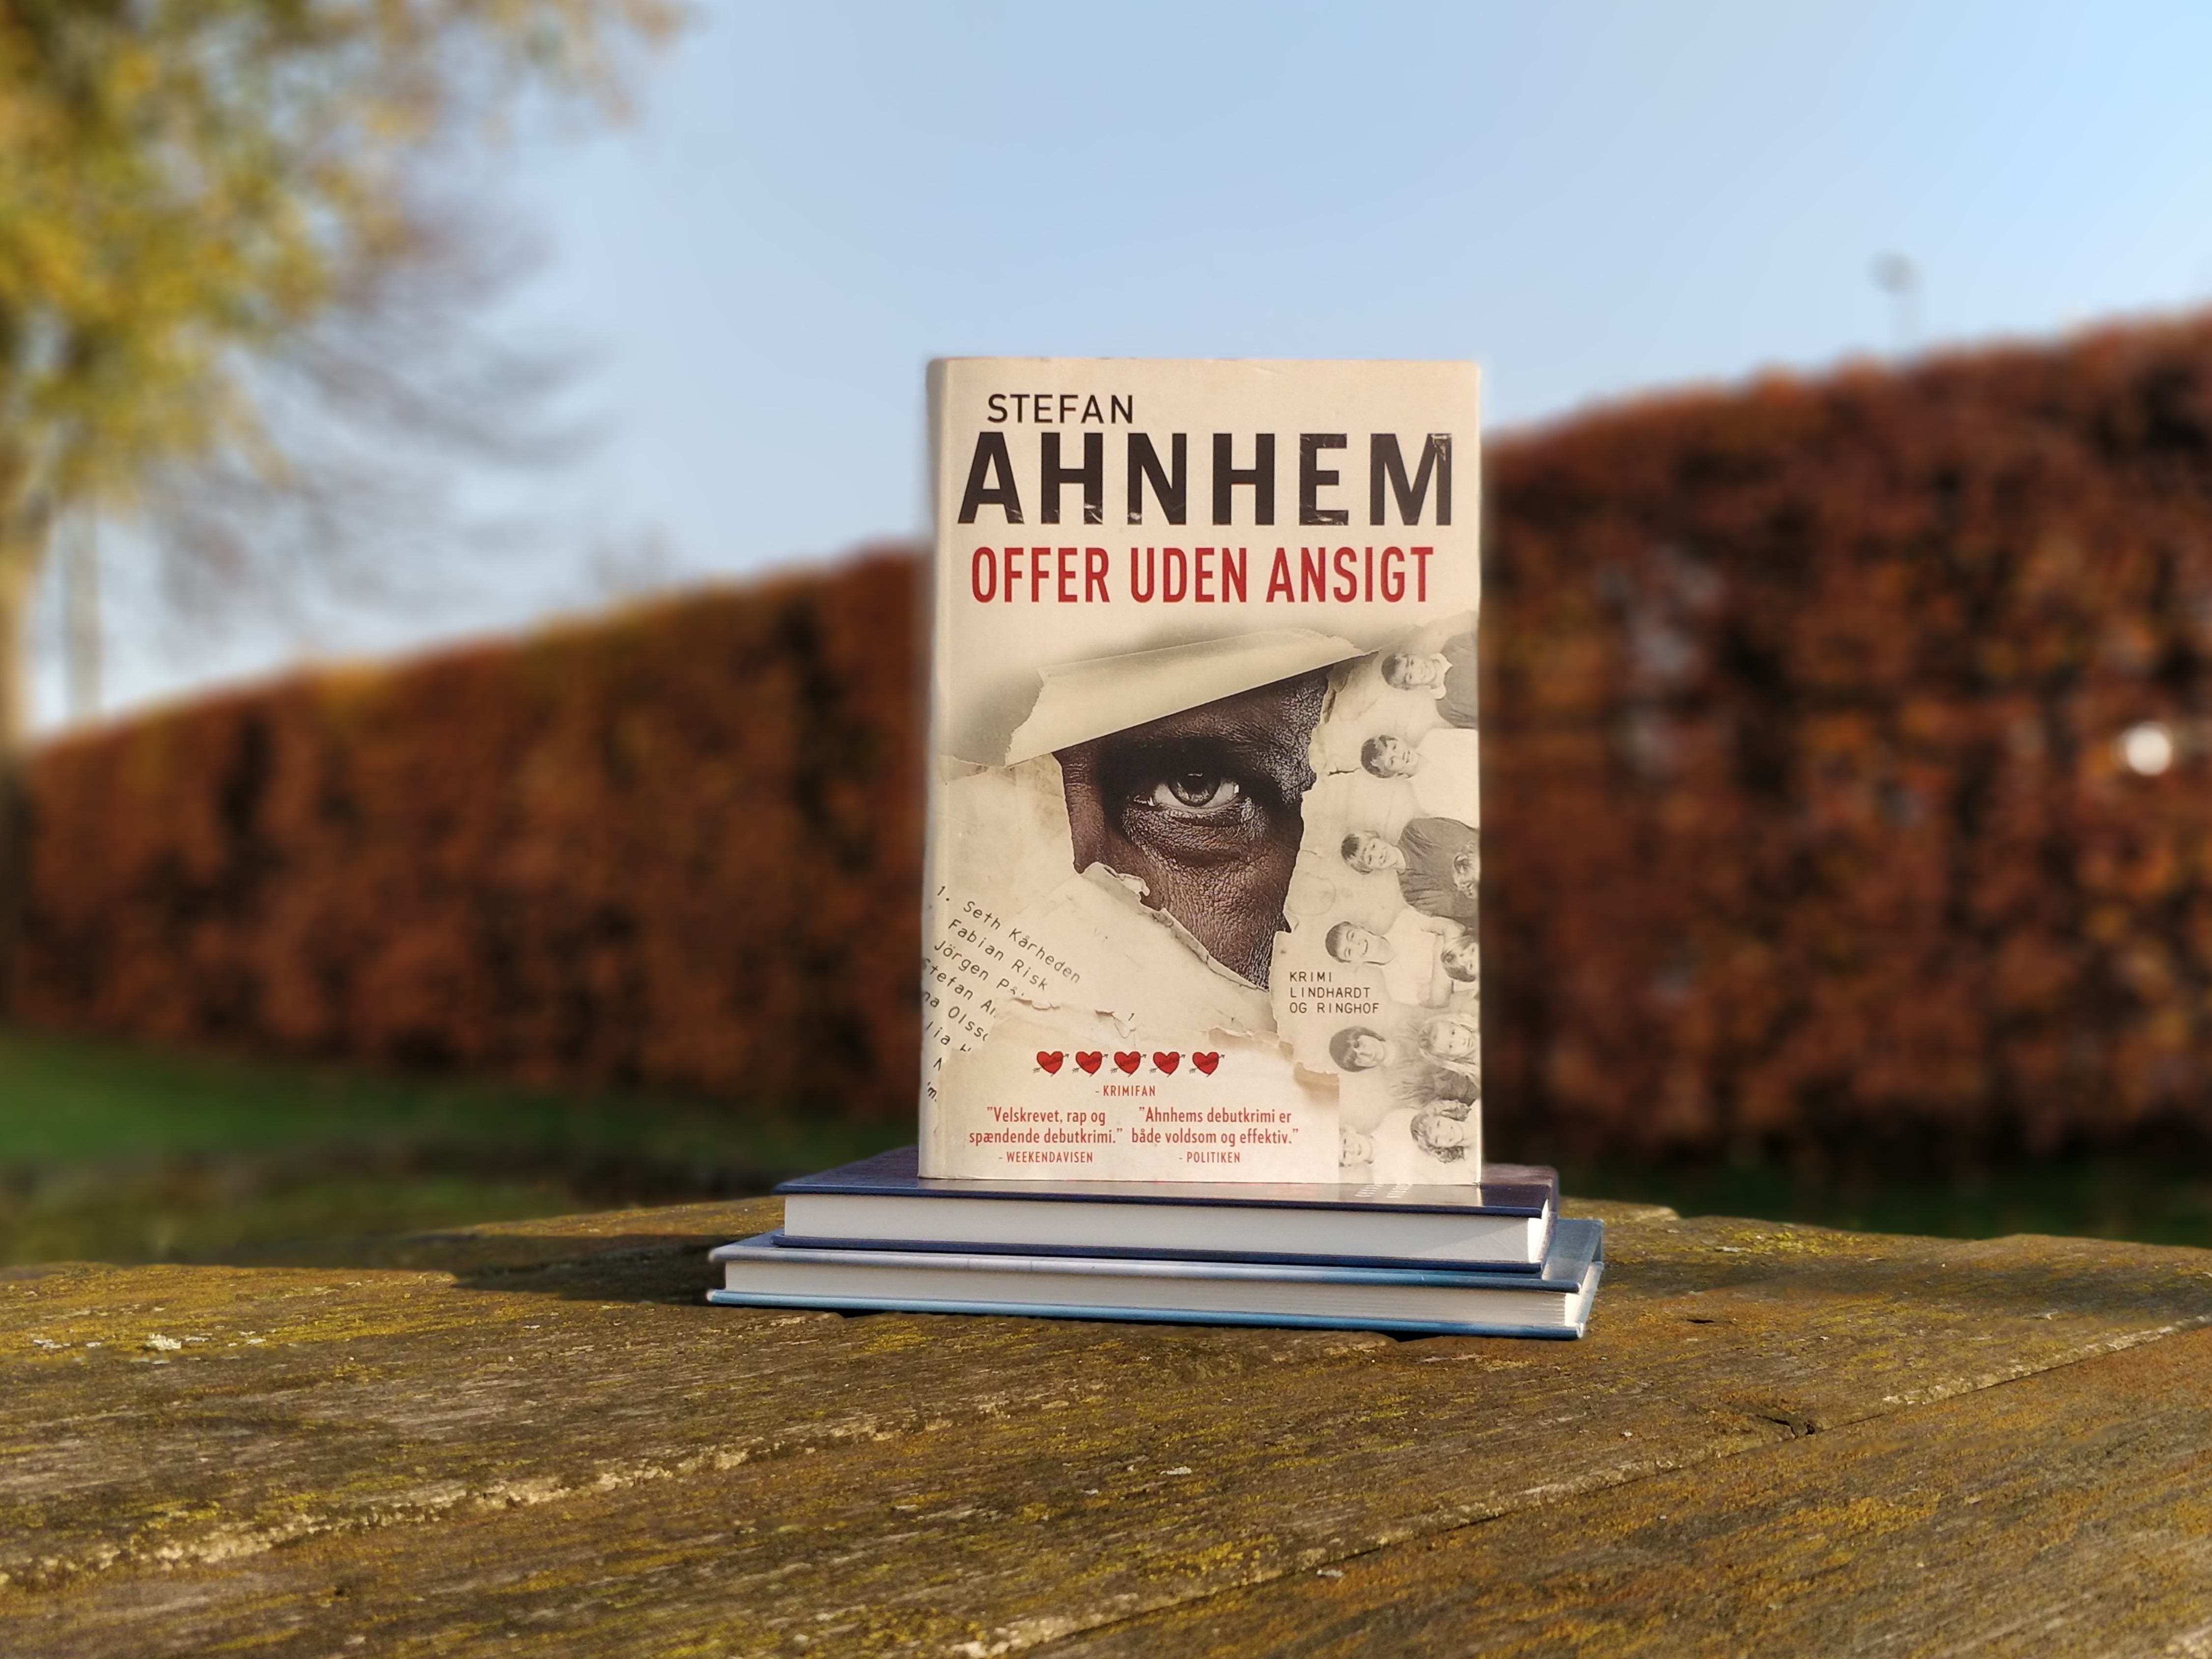 På et udendørsbord ligger to bøger, og oven på disse står bogen Offer uden ansigt af Stefan Ahnhem.